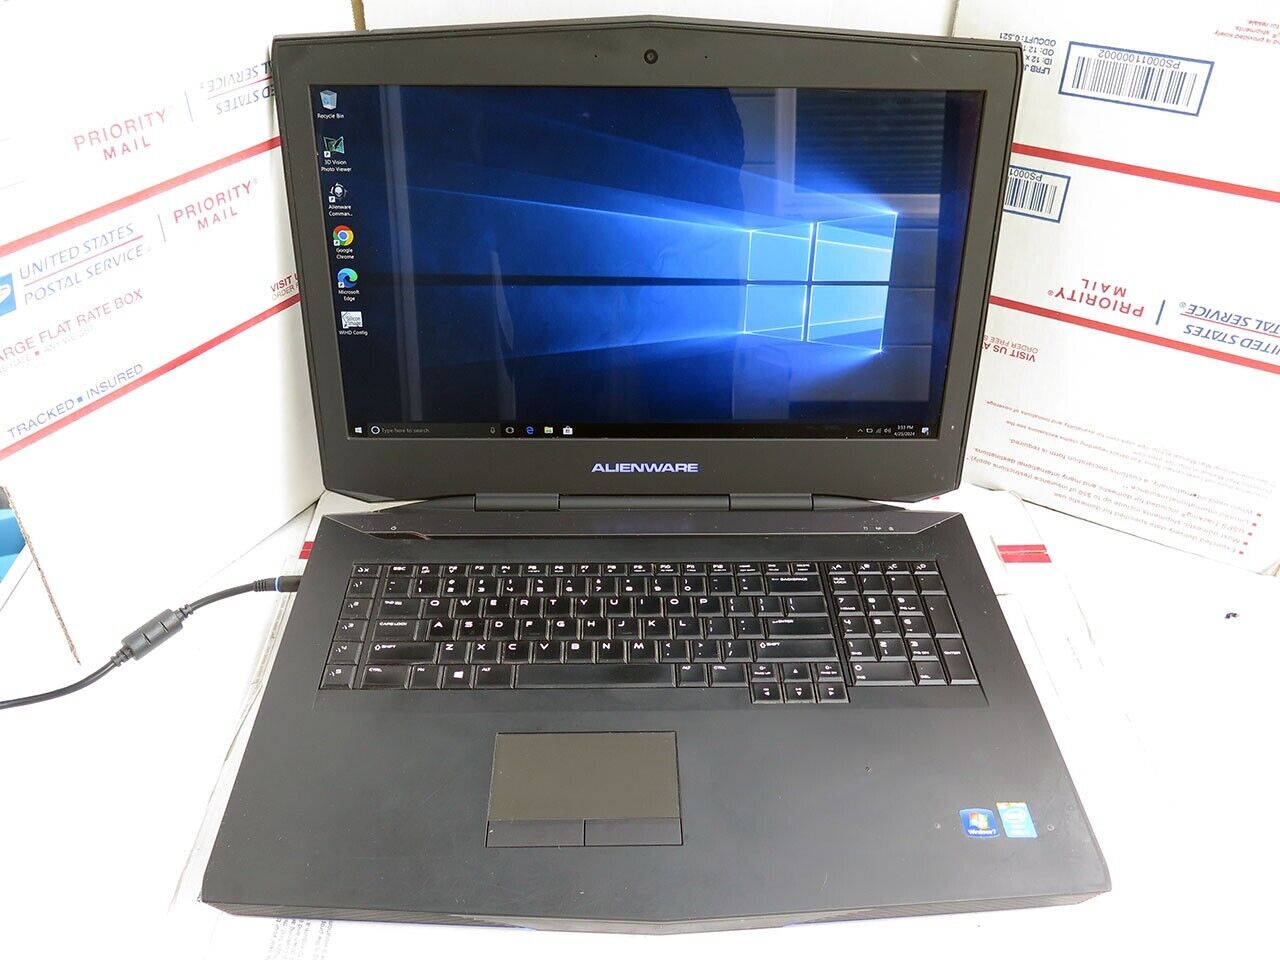 Alienware 18 P19e laptop i7-4910MQ 24GB 256GB SSD 2 x GTX 860M 2GB VGA Windows